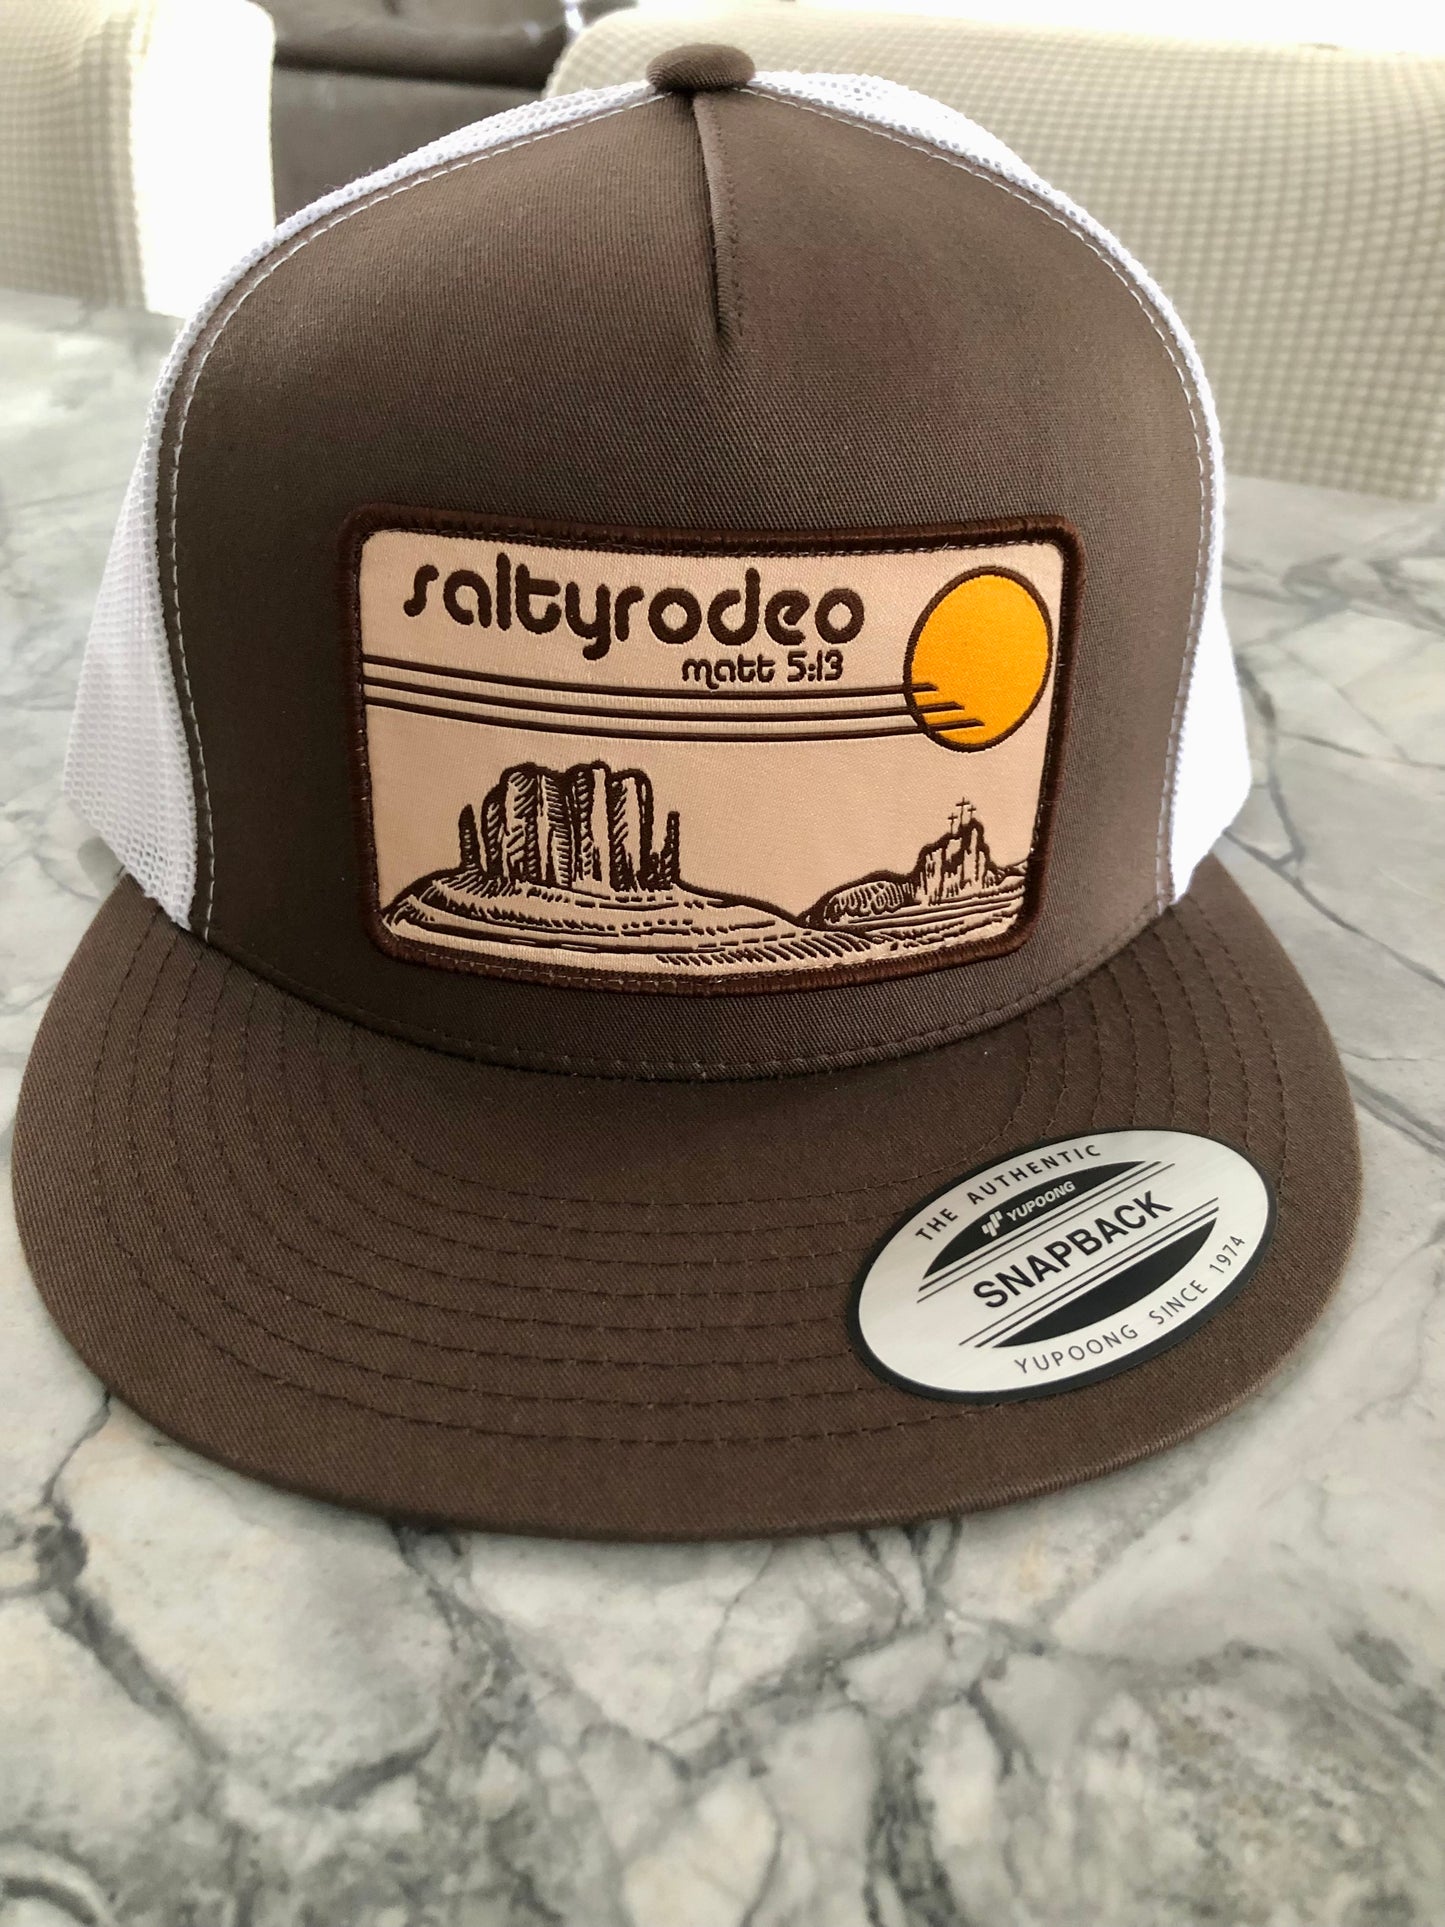 Salty rodeo “El Paso” hat